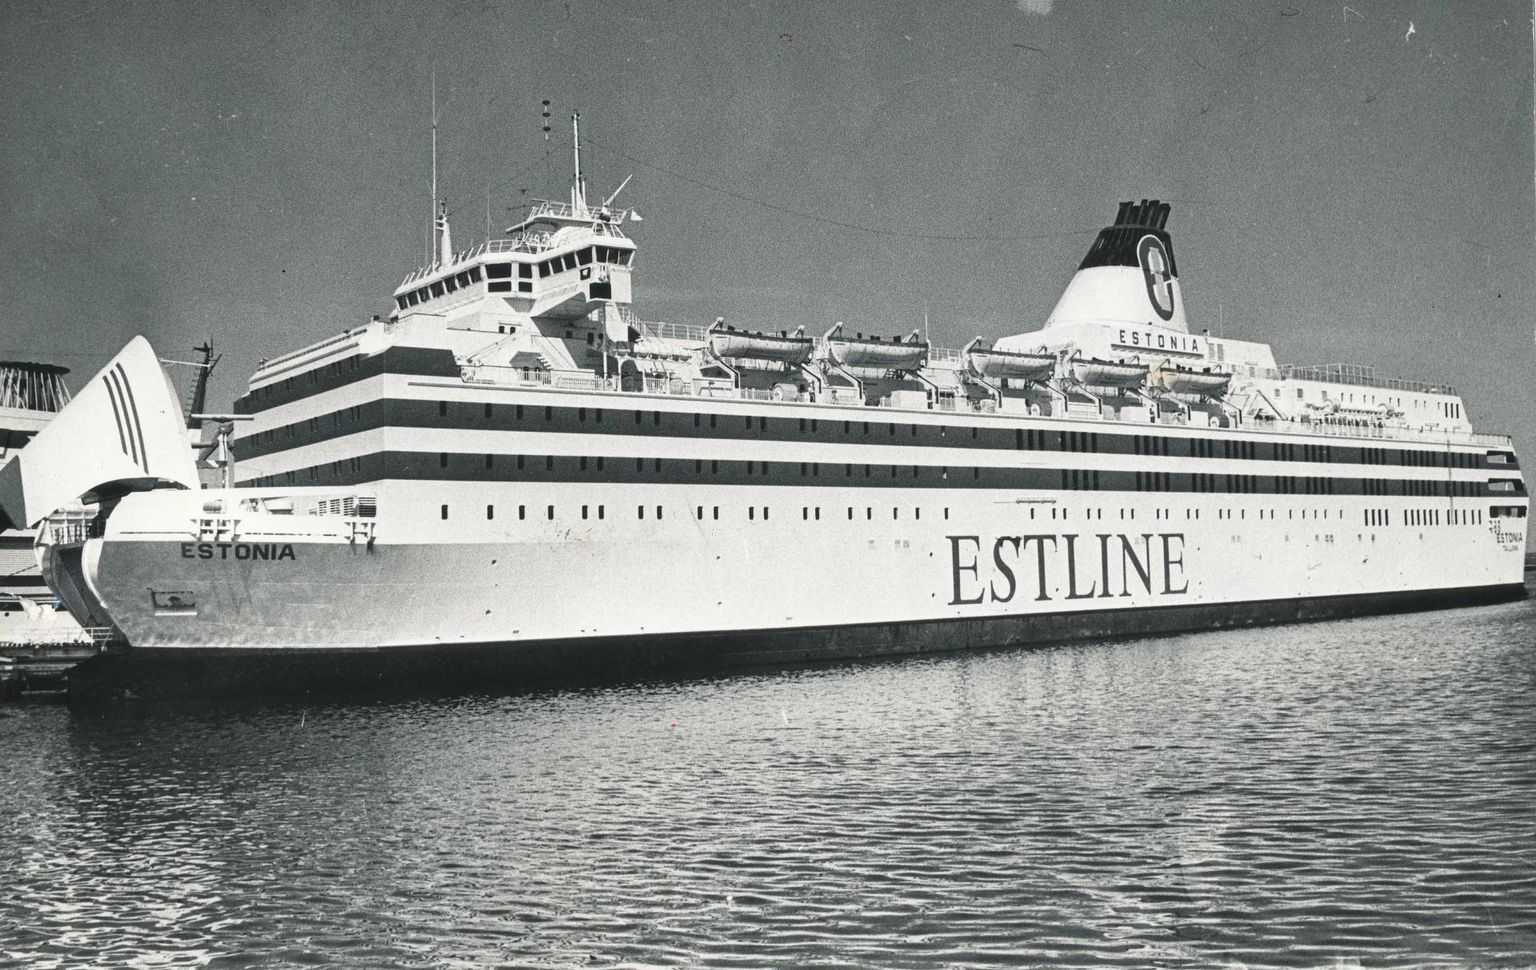 Pildil parvlaev Estonia sadamas